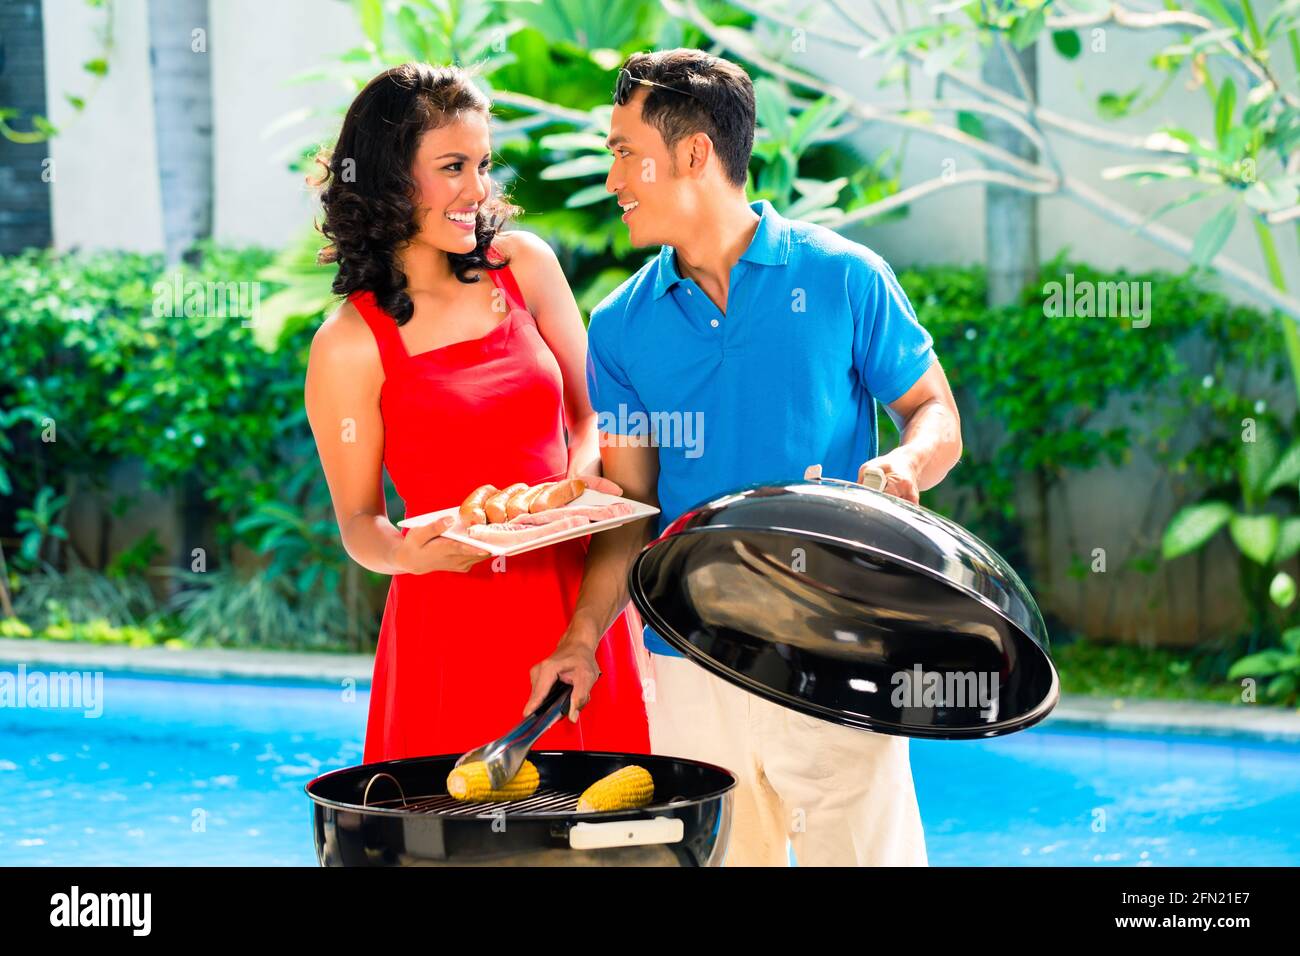 Asiatische hübsches Paar, Grillparty oder Grill draußen am Pool mit gegrillten Maiskolben Stockfoto